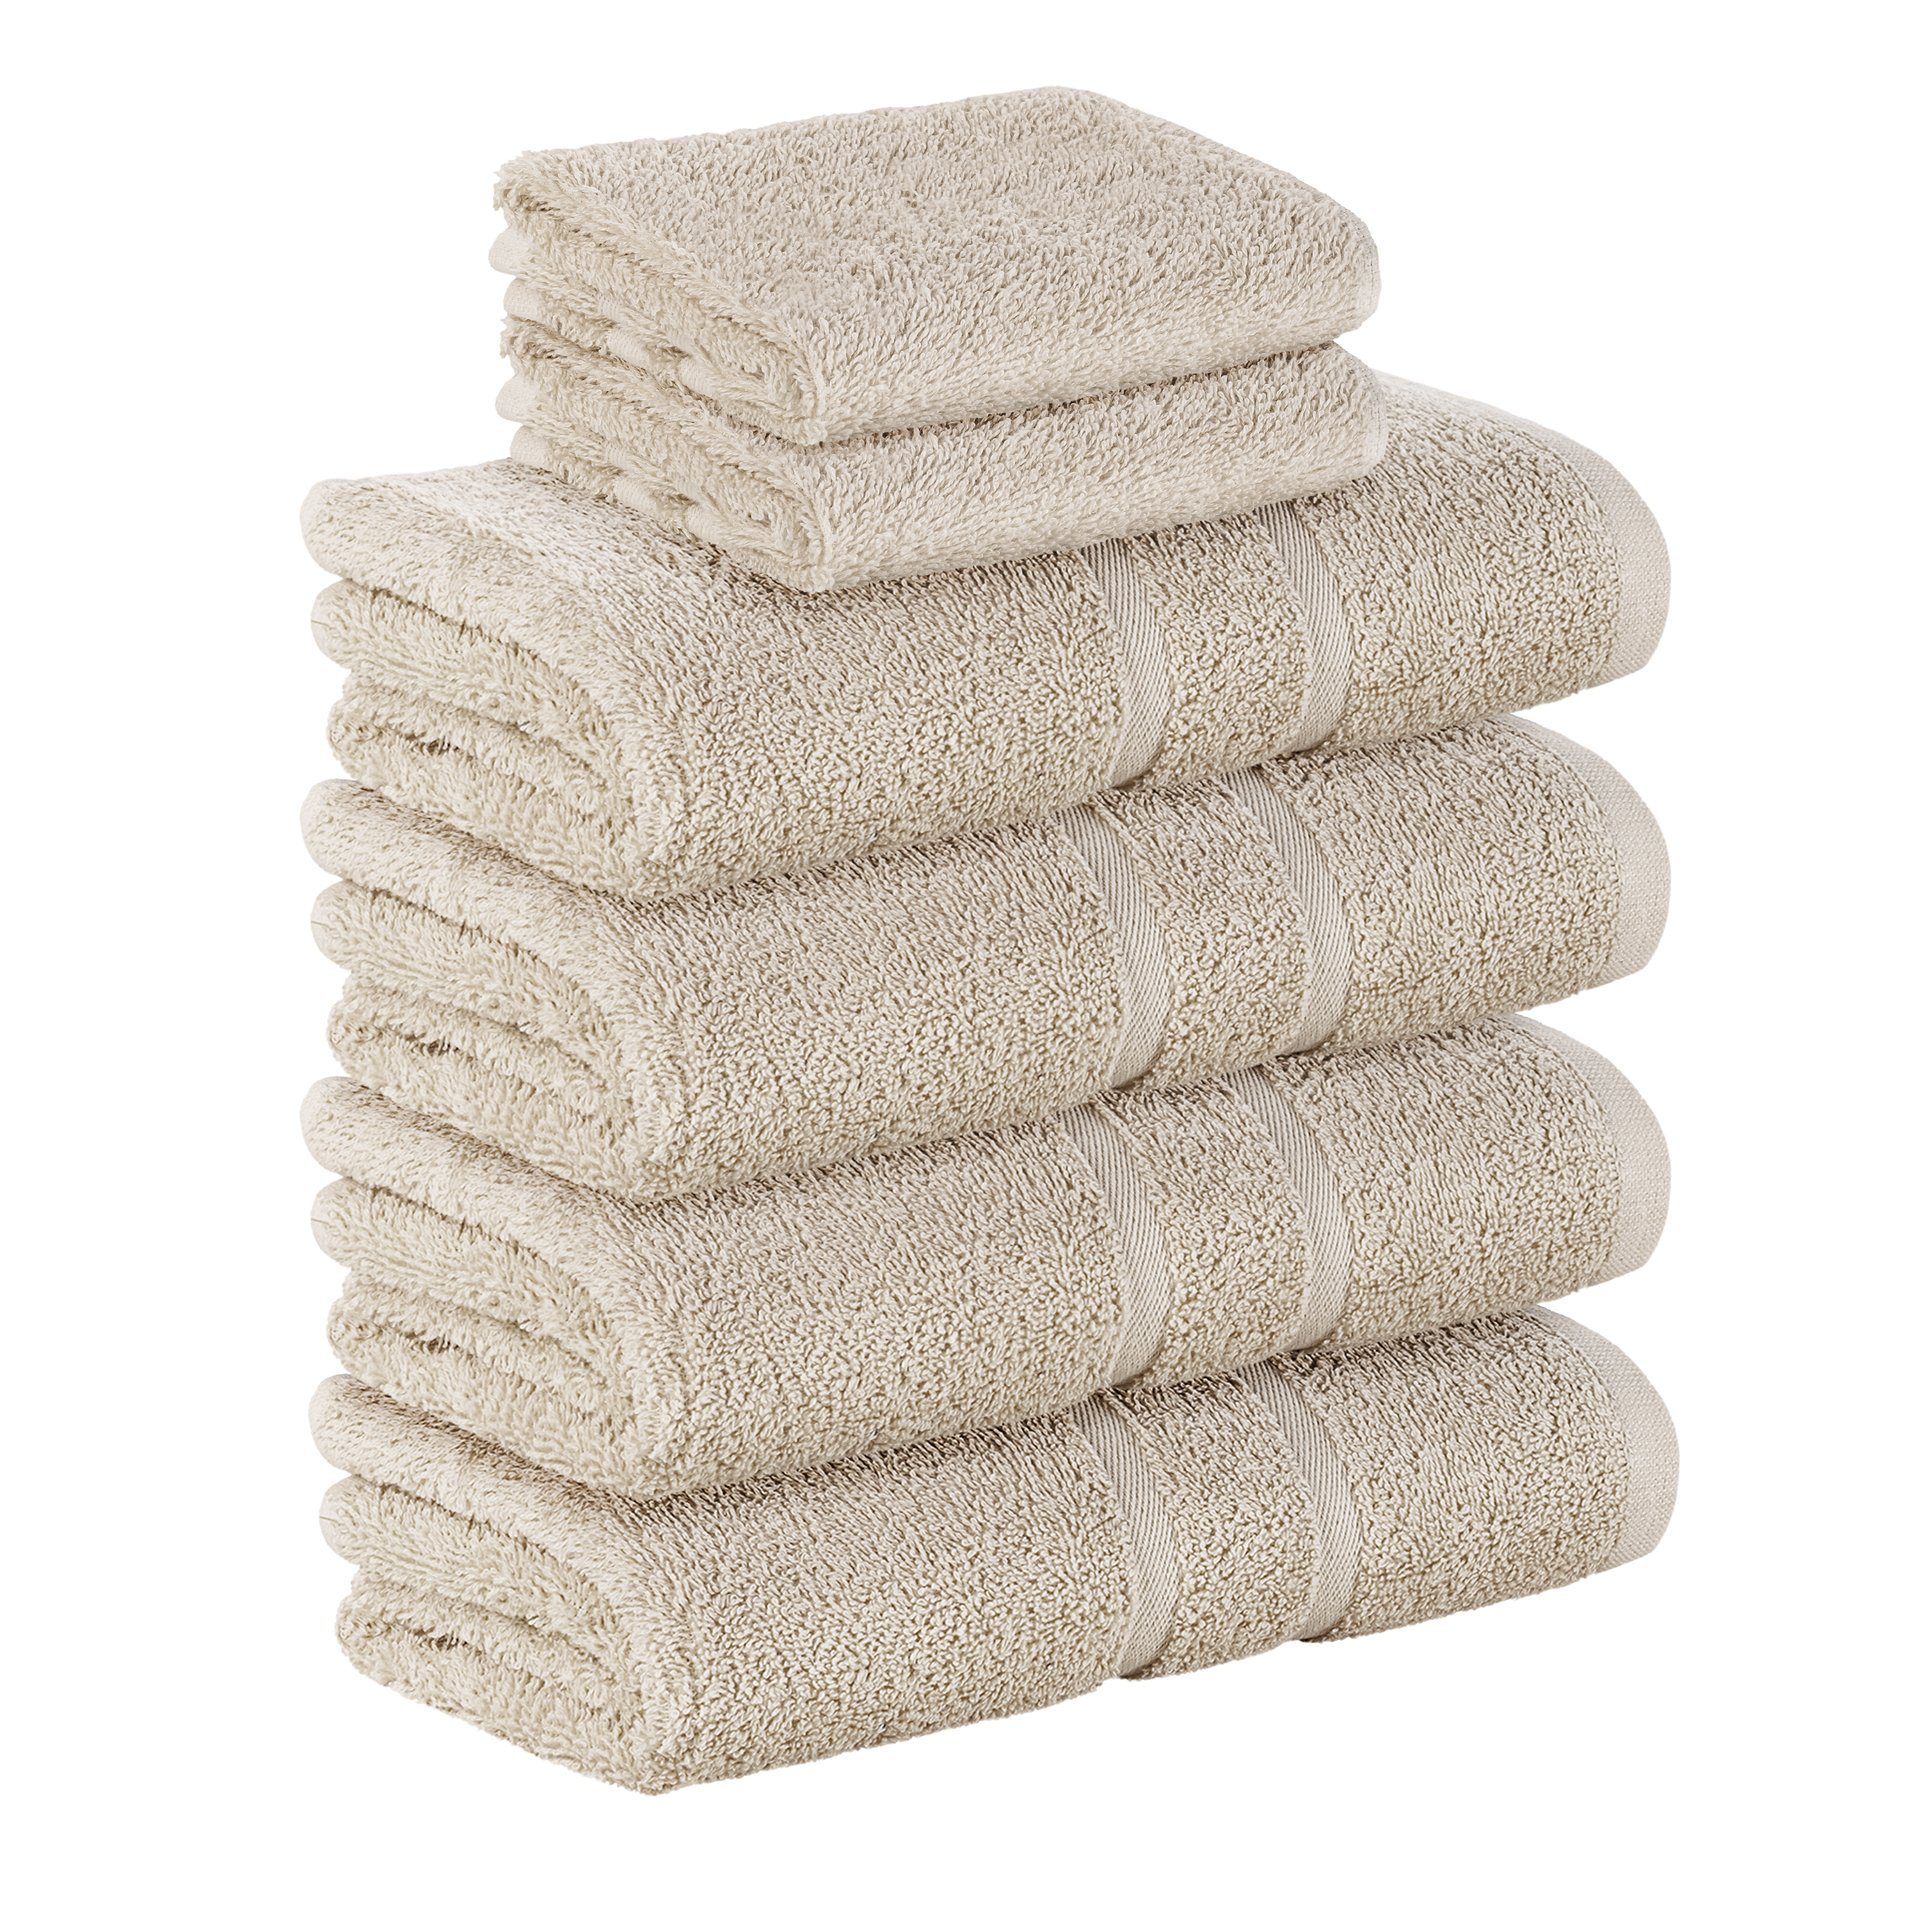 StickandShine Handtuch Set 2x Gästehandtuch 4x Handtücher als SET in verschiedenen Farben (6 Teilig) 100% Baumwolle 500 GSM Frottee 6er Handtuch Pack, 100% Baumwolle 500 GSM Sand